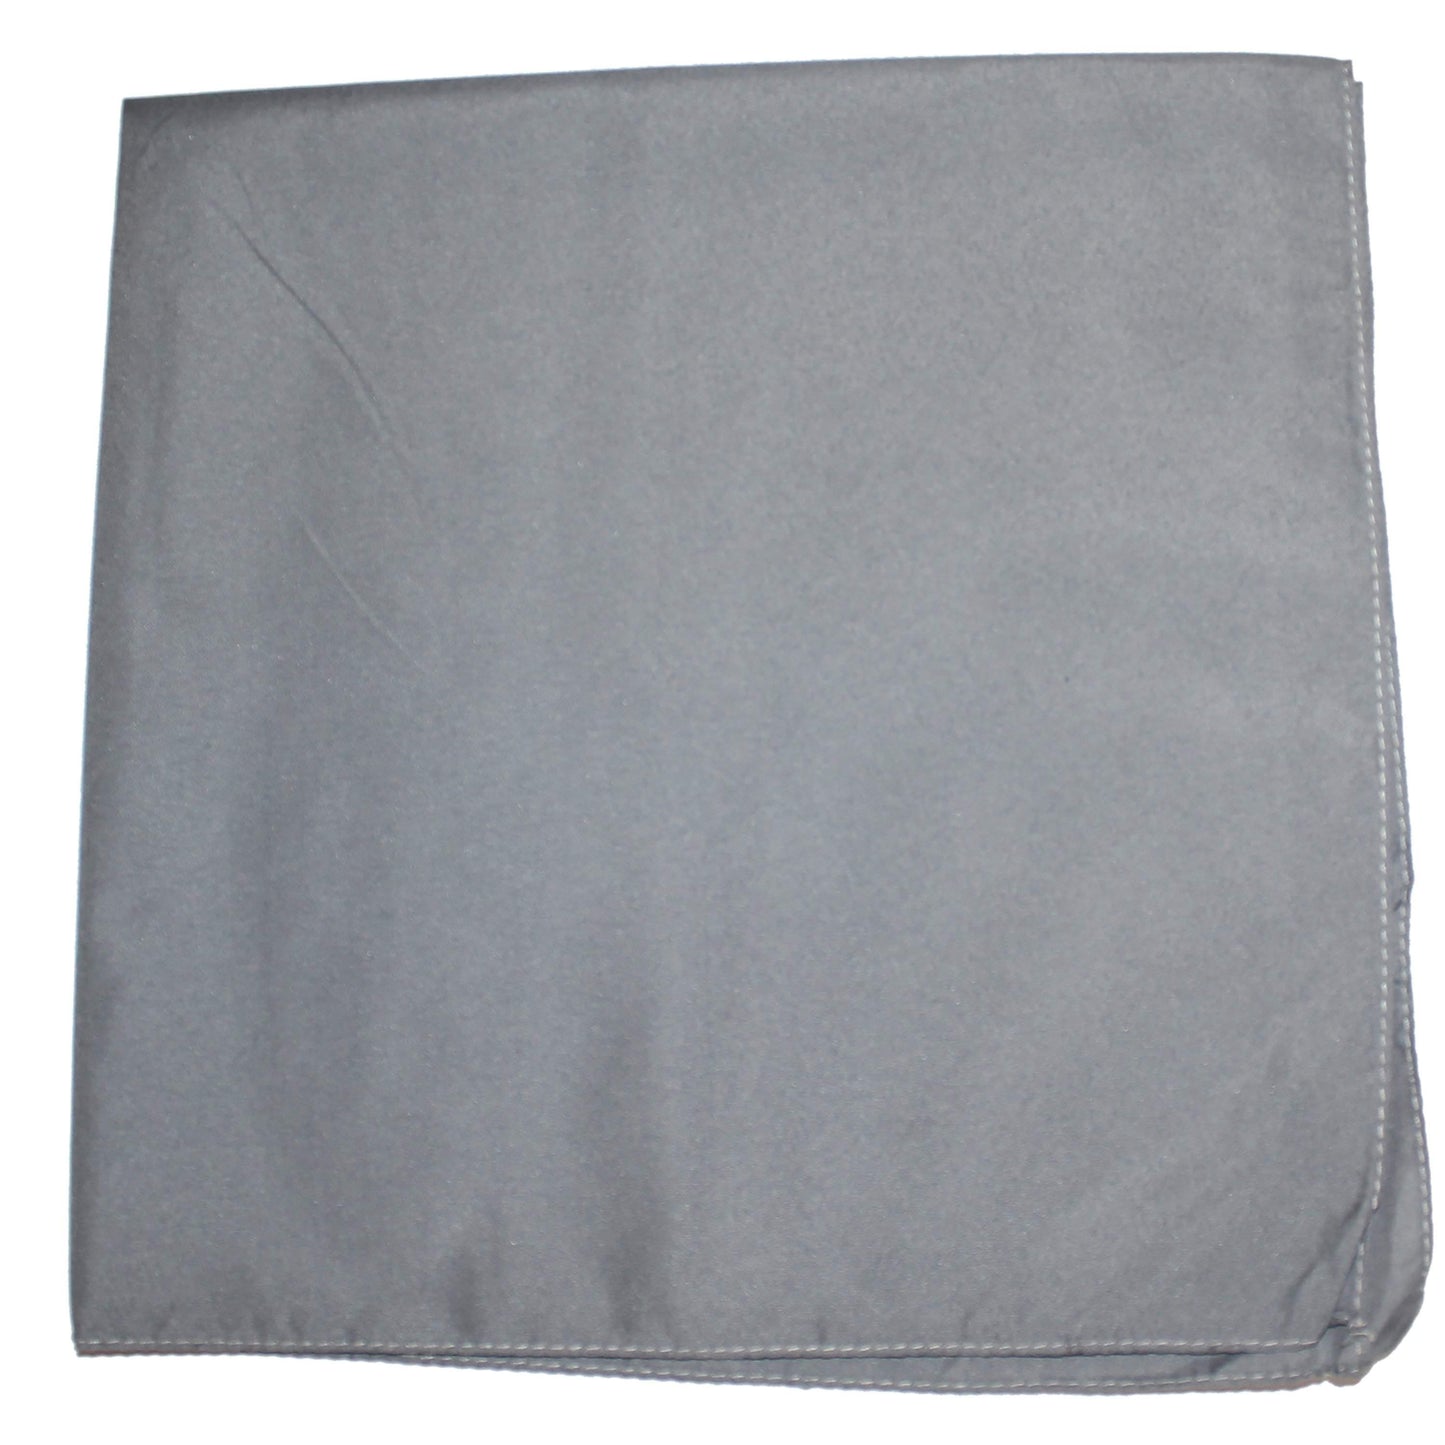 Unibasic Bulk Wholesale Unisex Cotton X-Large Paisley and Plain Bandana - 240 Pack